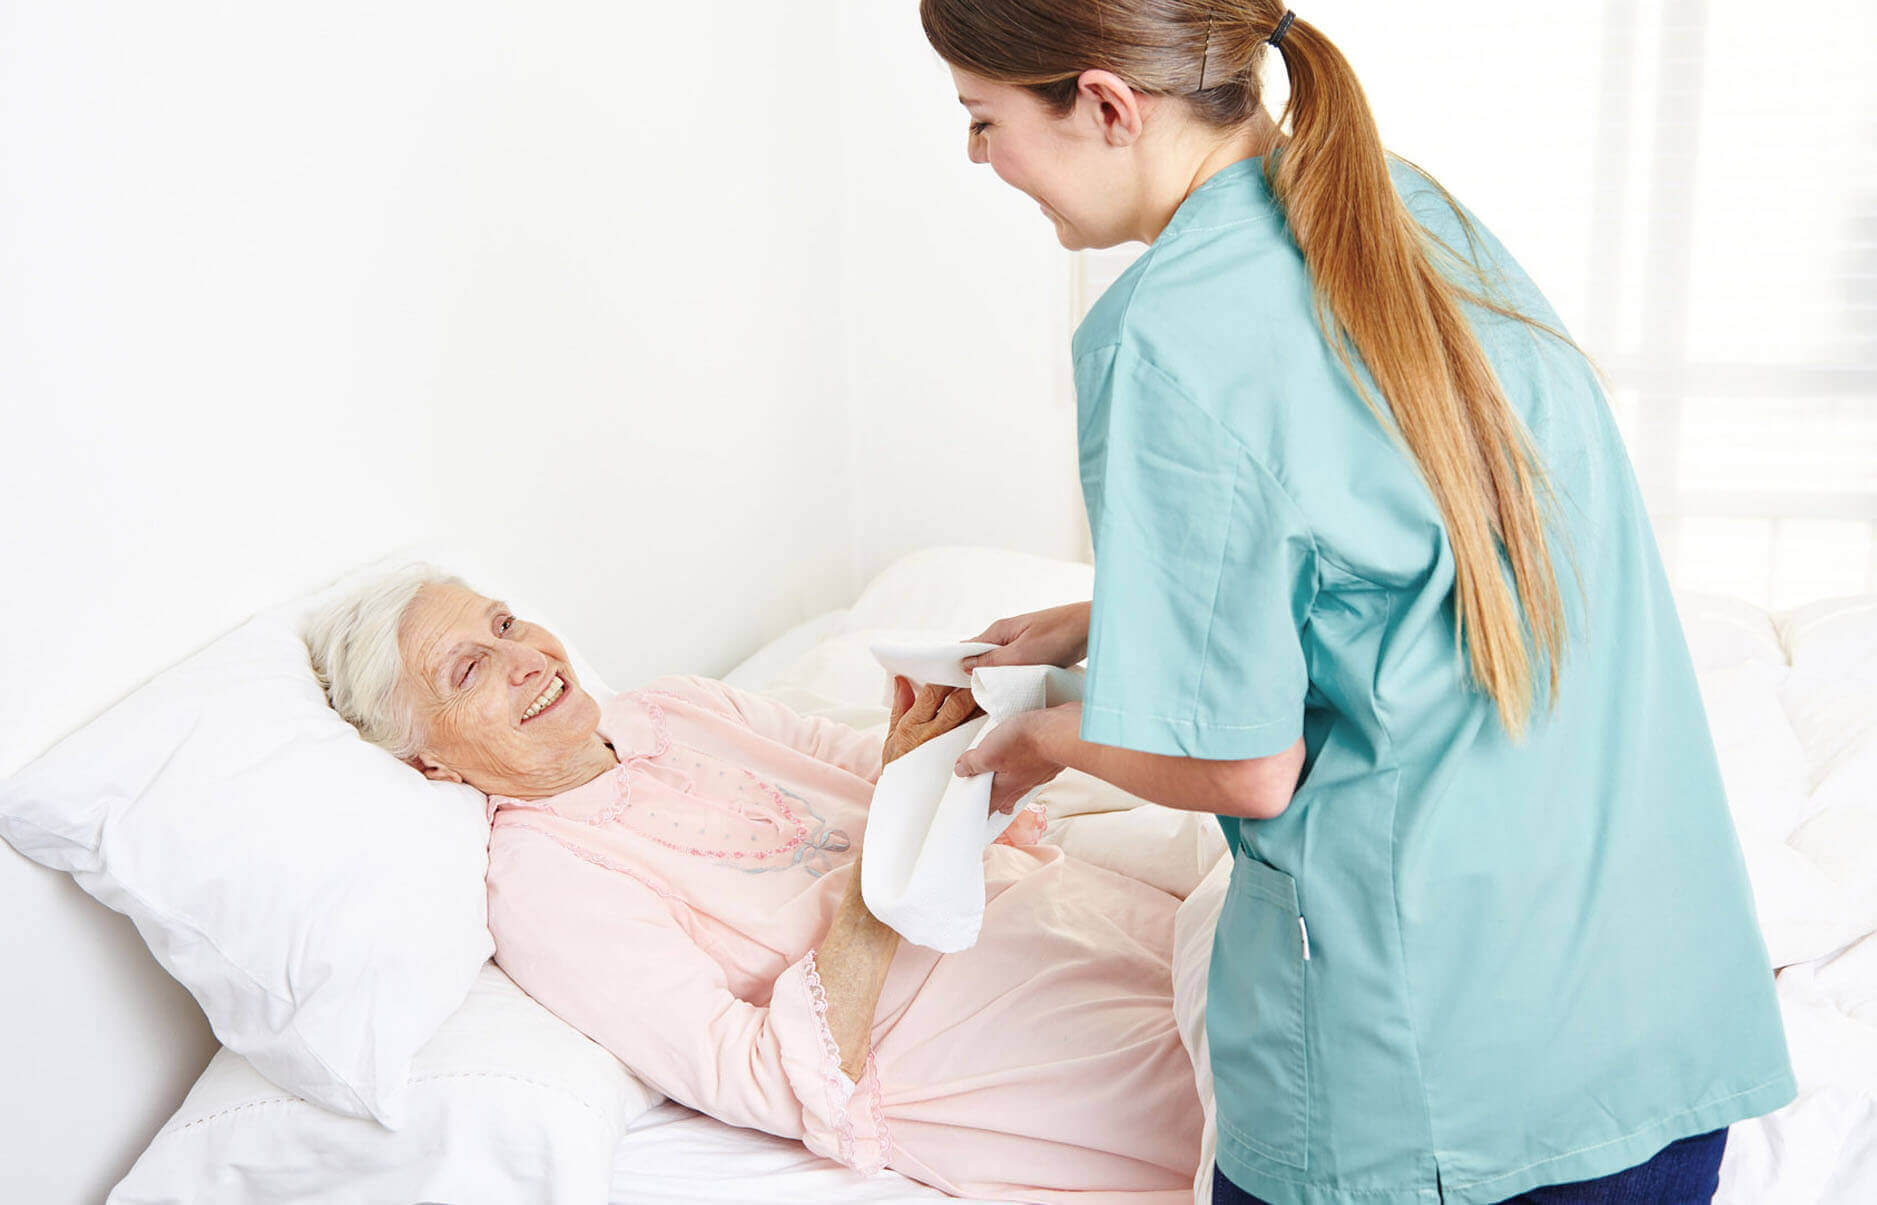 Большинство приказов по уходу за престарелыми носят легкий характер, но есть и более серьезные случаи среди тех, кто находится под опекой, таких как прикованные к постели пациенты